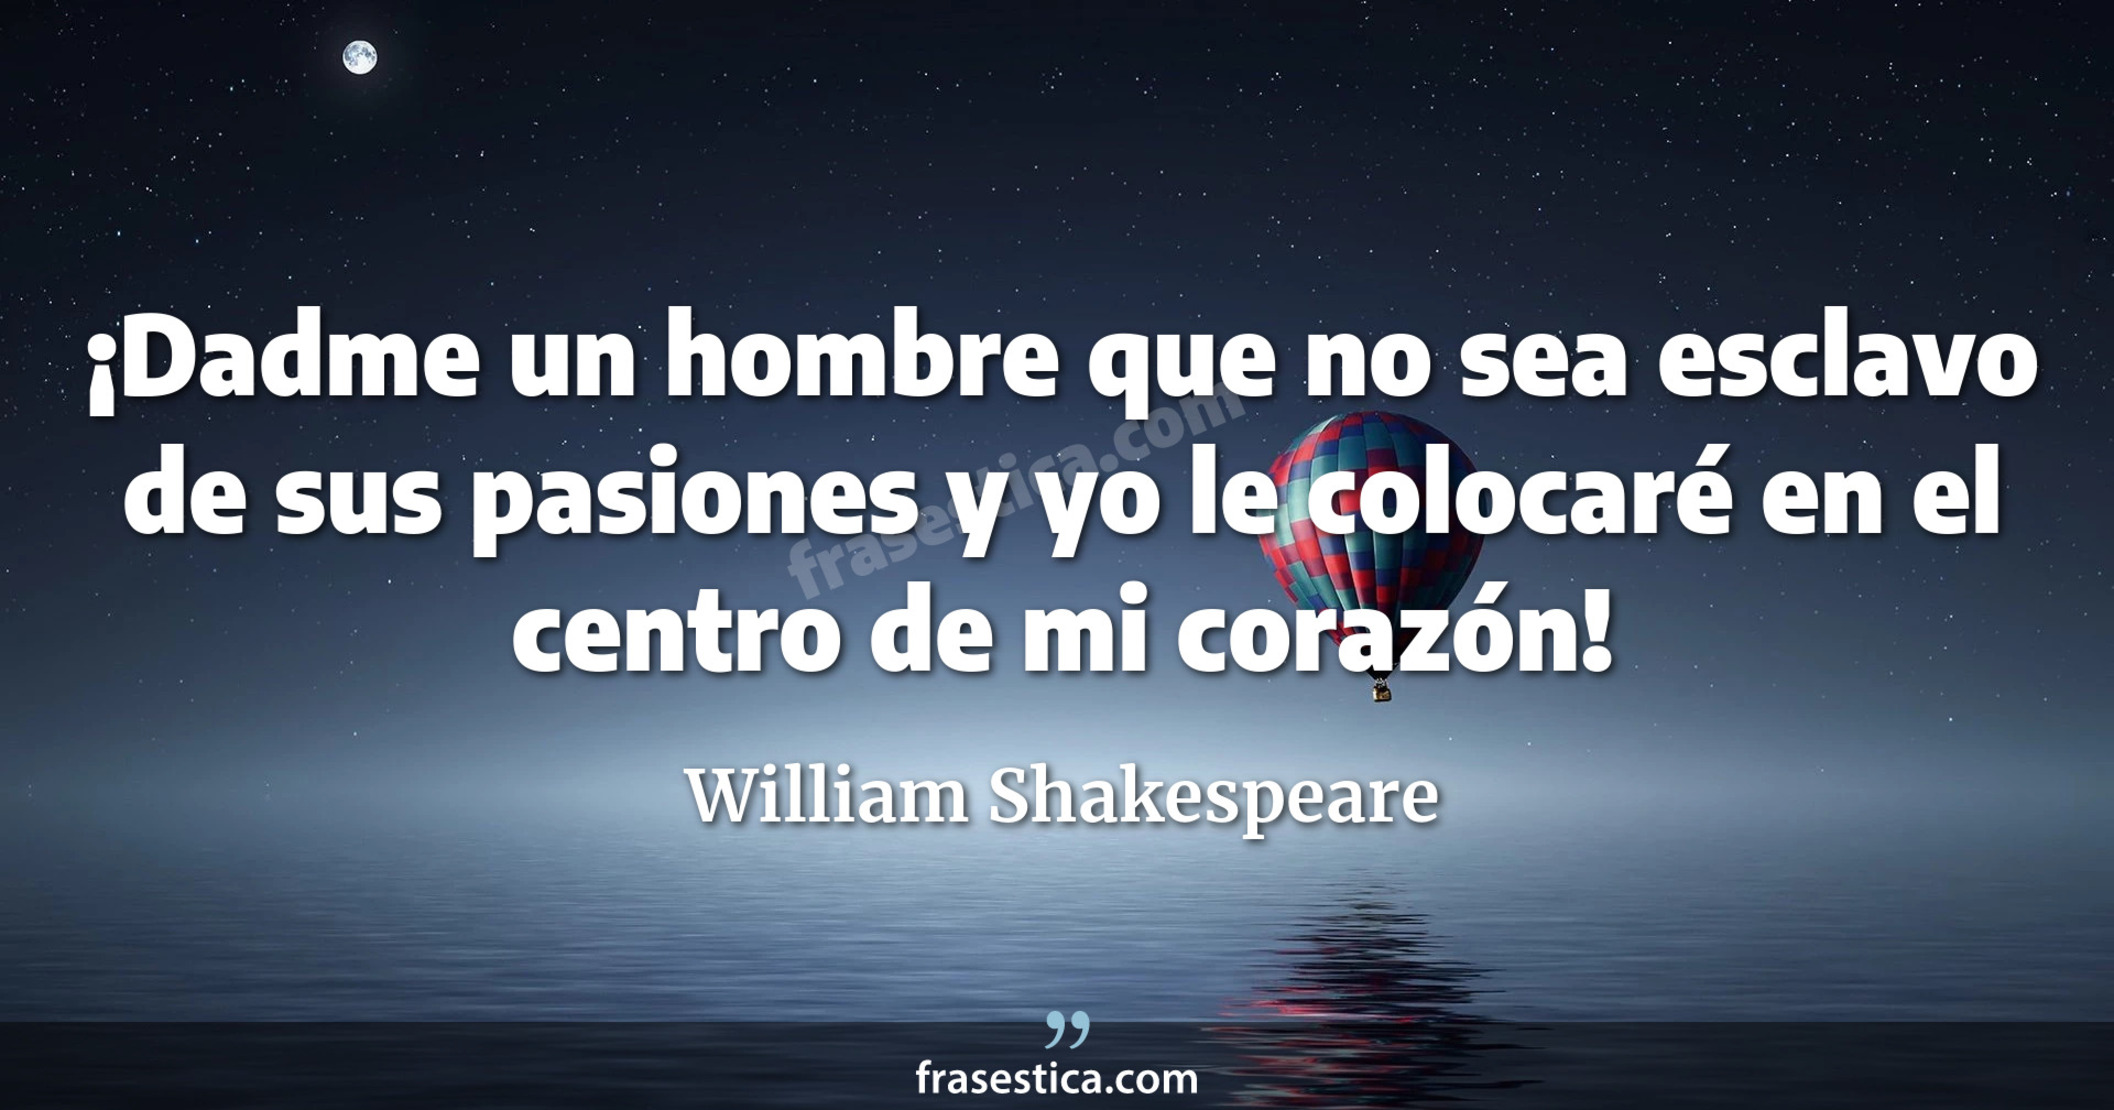 ¡Dadme un hombre que no sea esclavo de sus pasiones y yo le colocaré en el centro de mi corazón! - William Shakespeare